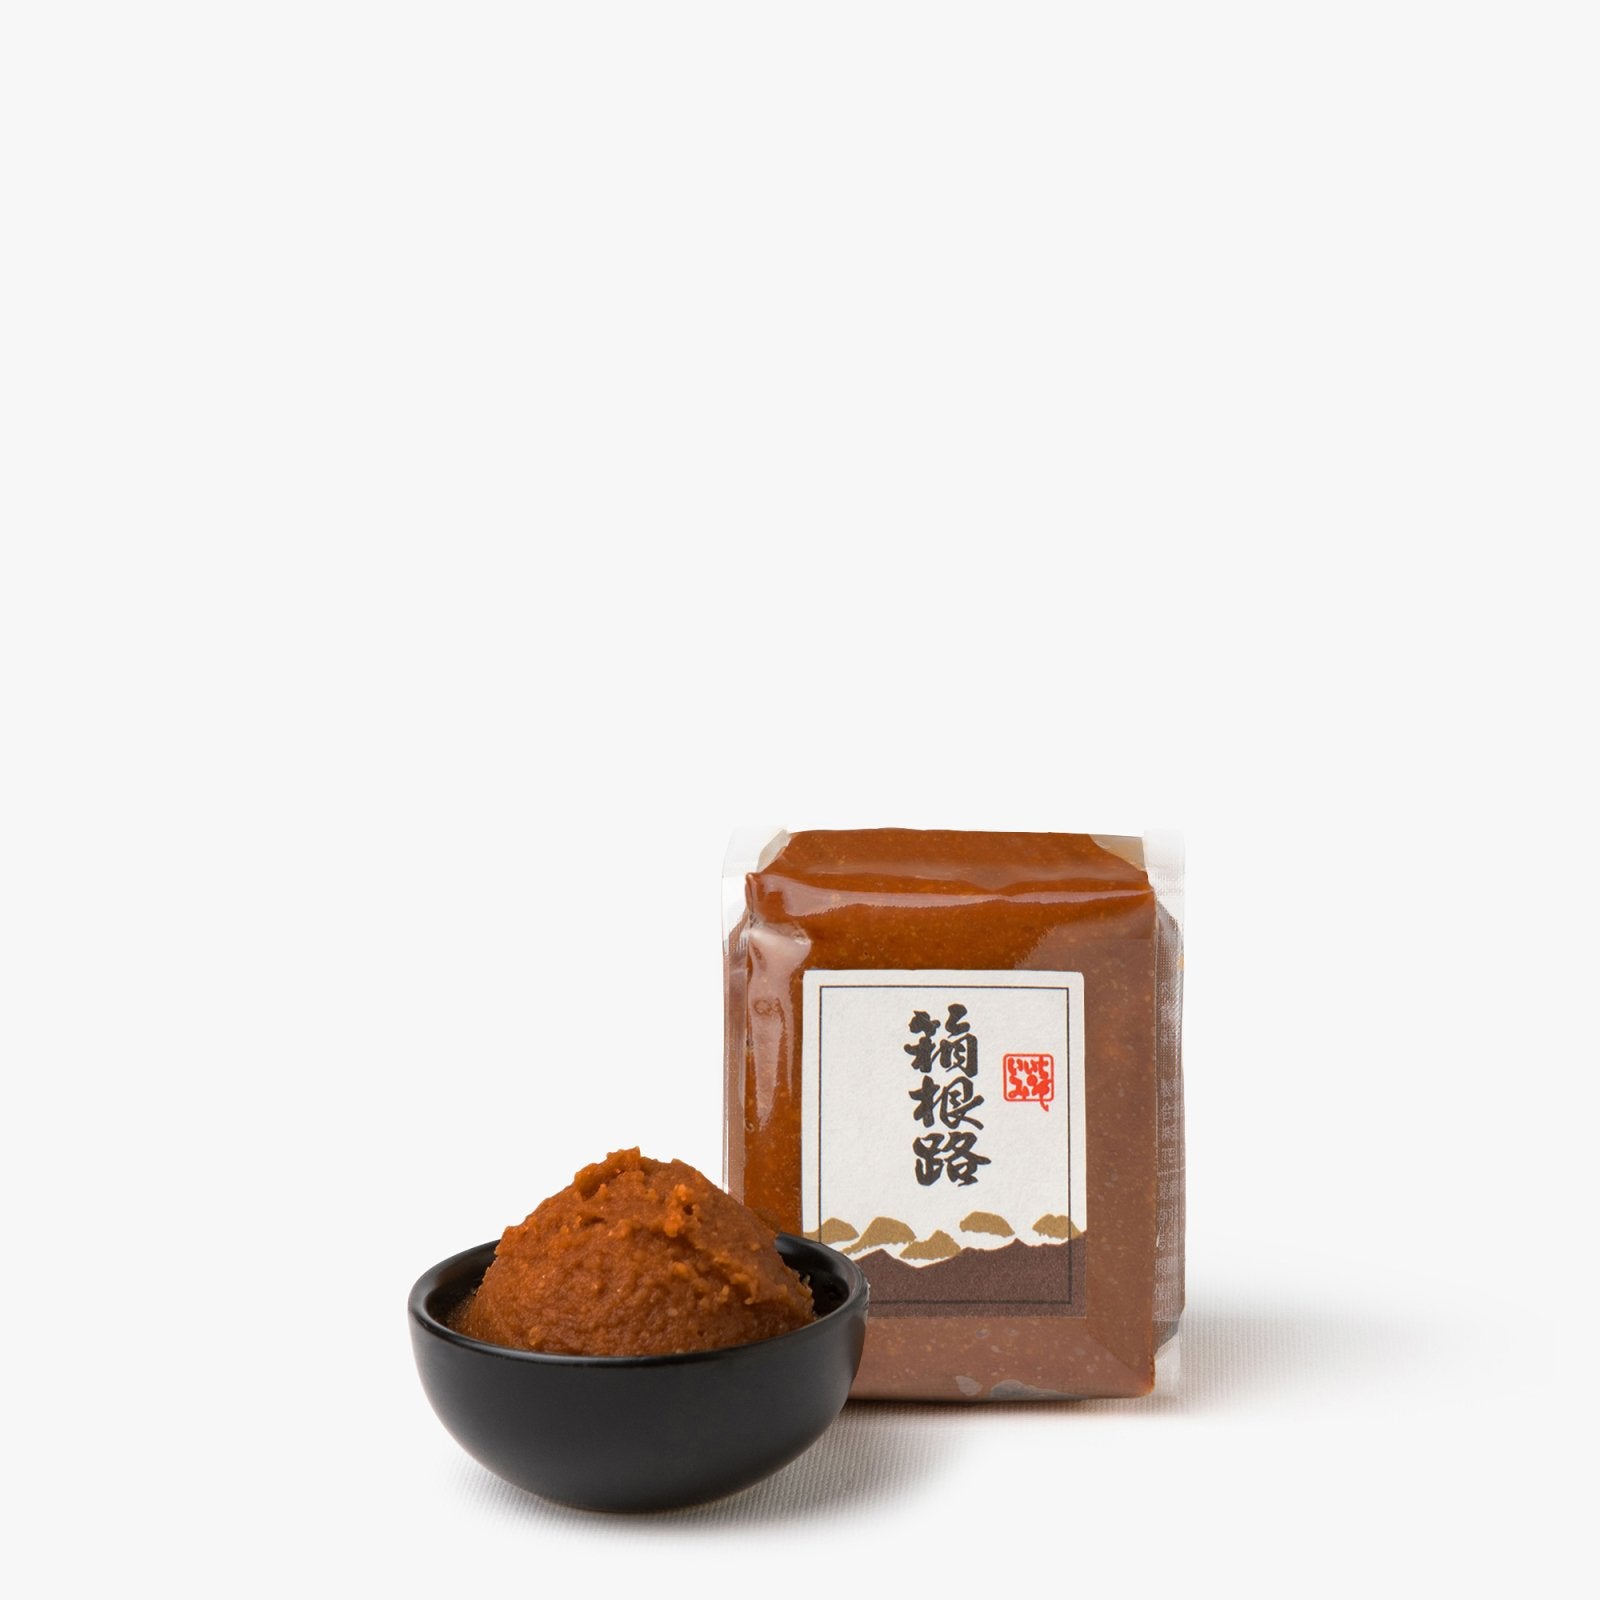 Miso longue fermentation de Hakone - 200g - Kato Heitaro shoten -iRASSHAi